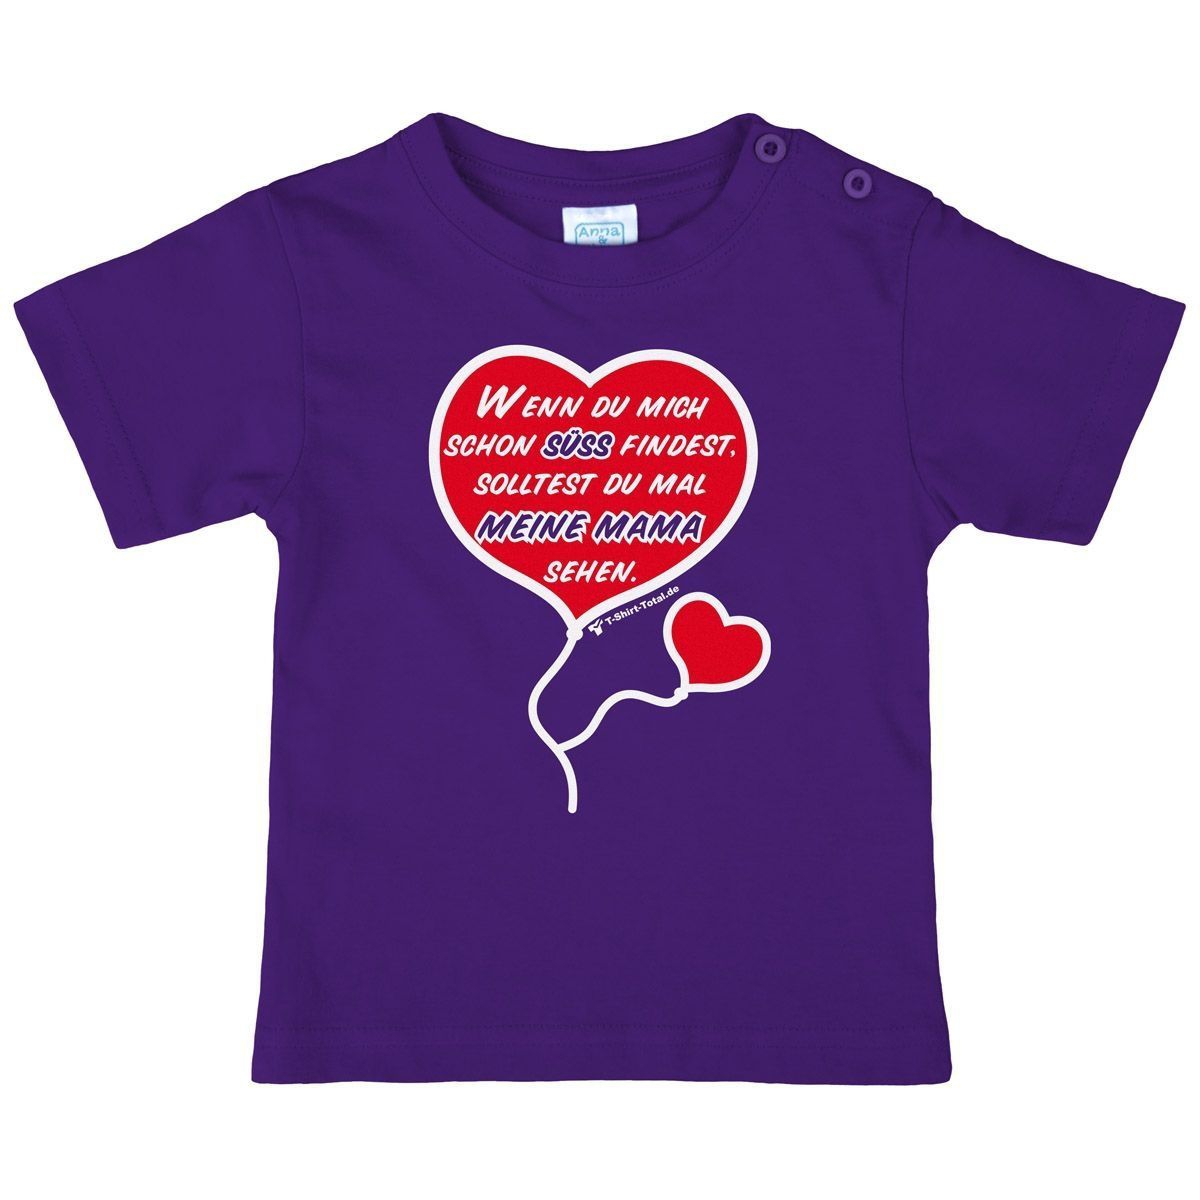 Süß finden Kinder T-Shirt lila 98